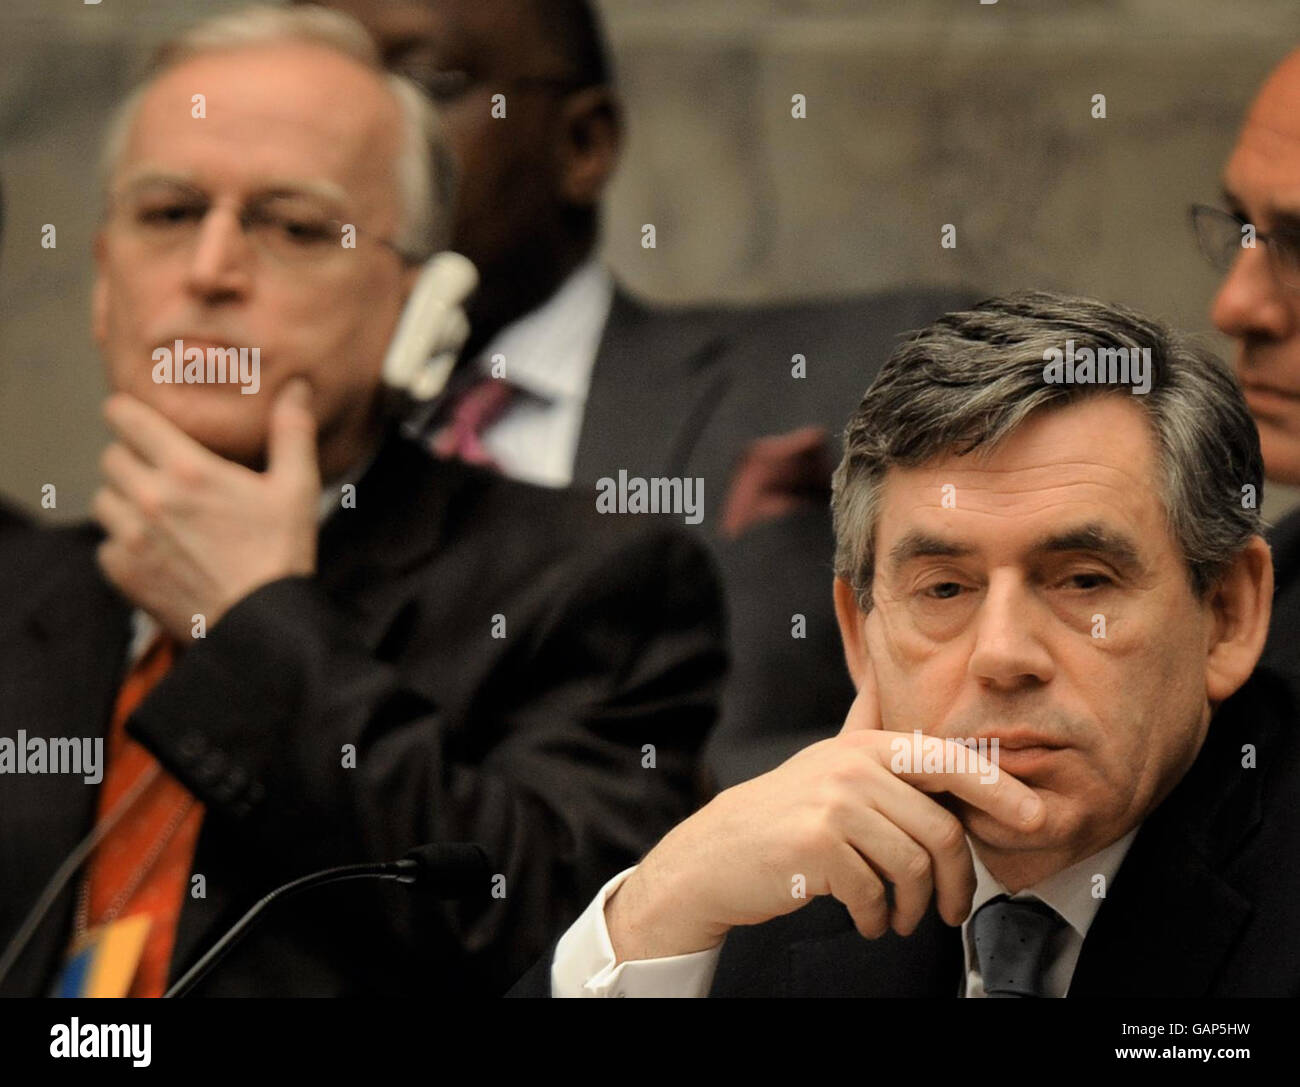 Il primo ministro britannico Gordon Brown attende oggi un discorso al Consiglio di sicurezza delle Nazioni Unite presso la sede delle Nazioni Unite a New York. Foto Stock